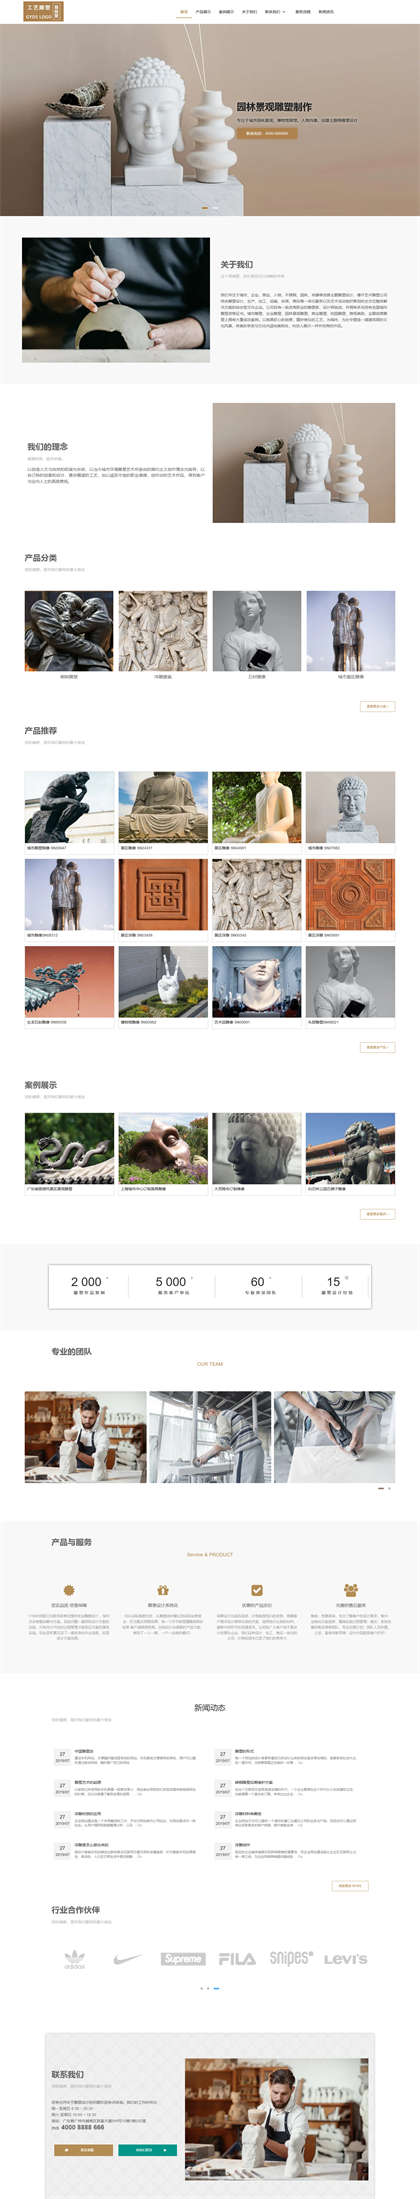 雕塑设计-工艺雕塑-人像雕塑-工艺品制作网站模板网站模板图片